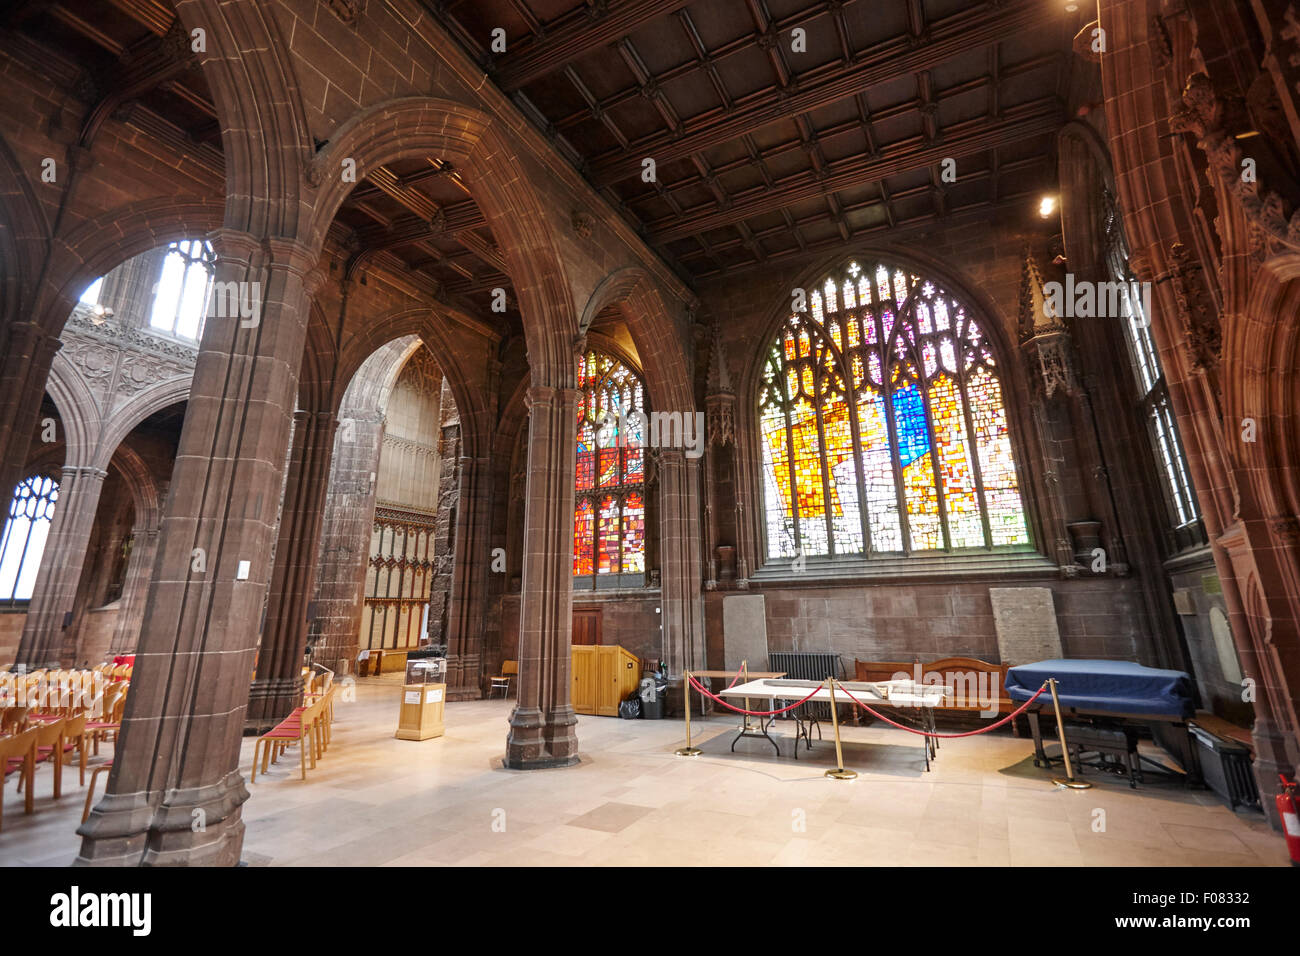 L'intérieur et les vitraux de la cathédrale de Manchester uk Banque D'Images